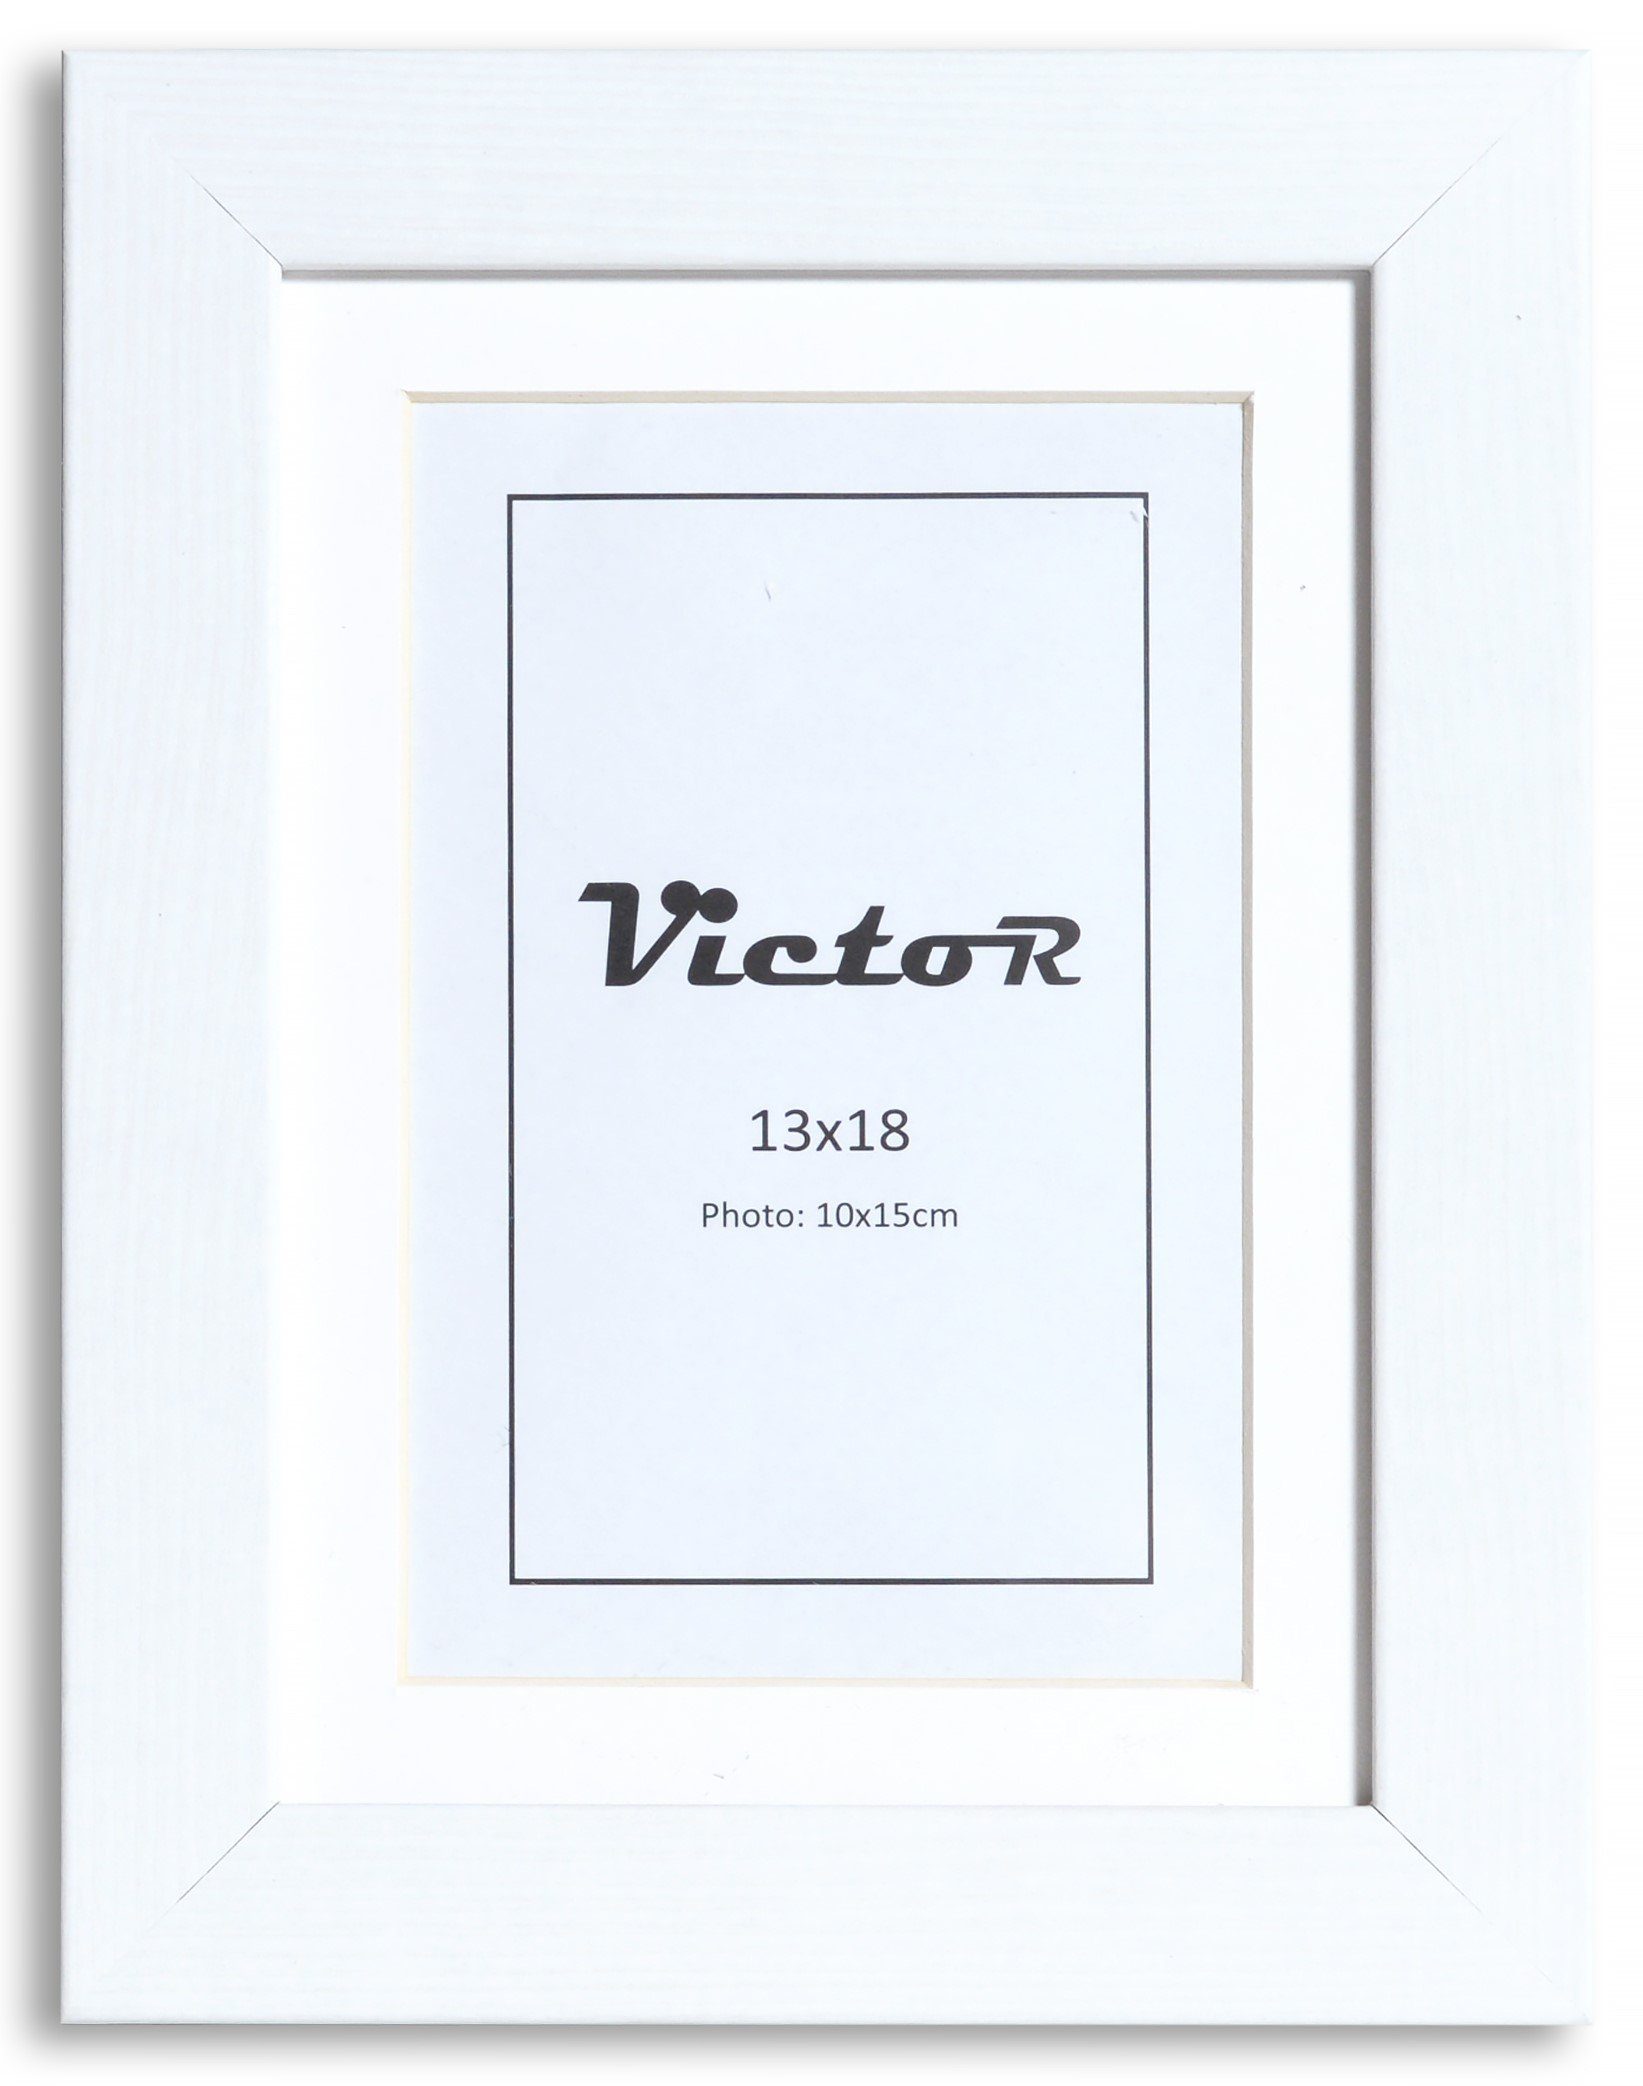 Hohe Qualität Victor (Zenith) Bilderrahmen Richter, cm cm 13x18 mit Bilderrahmen Weiß Passepartout, Holz 10x15